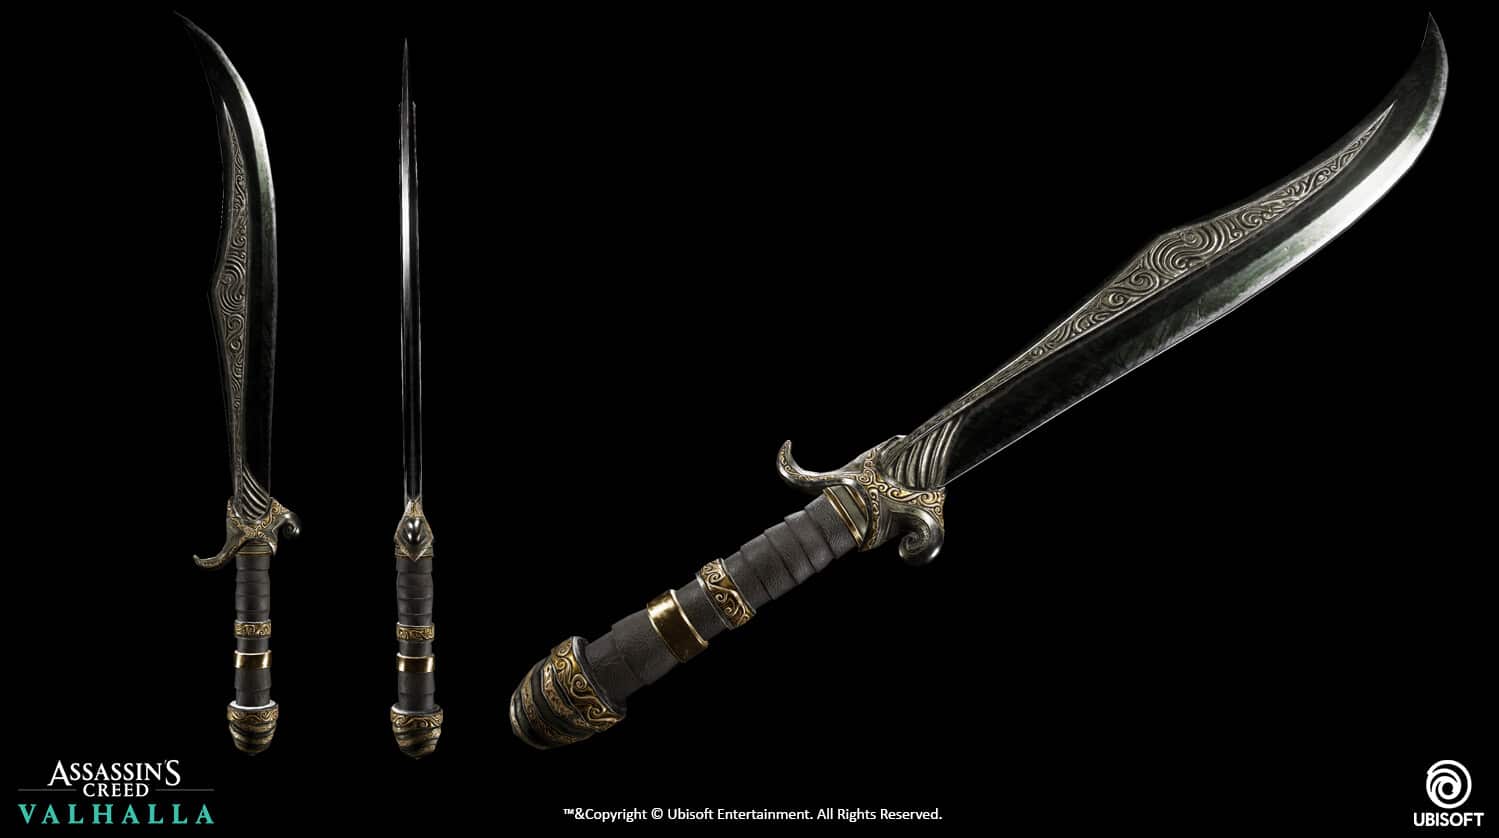 Senza dubbio, la spada di Basim è una delle armi più belle che gli artisti di Ubisoft abbiano creato per AC: Valhalla.